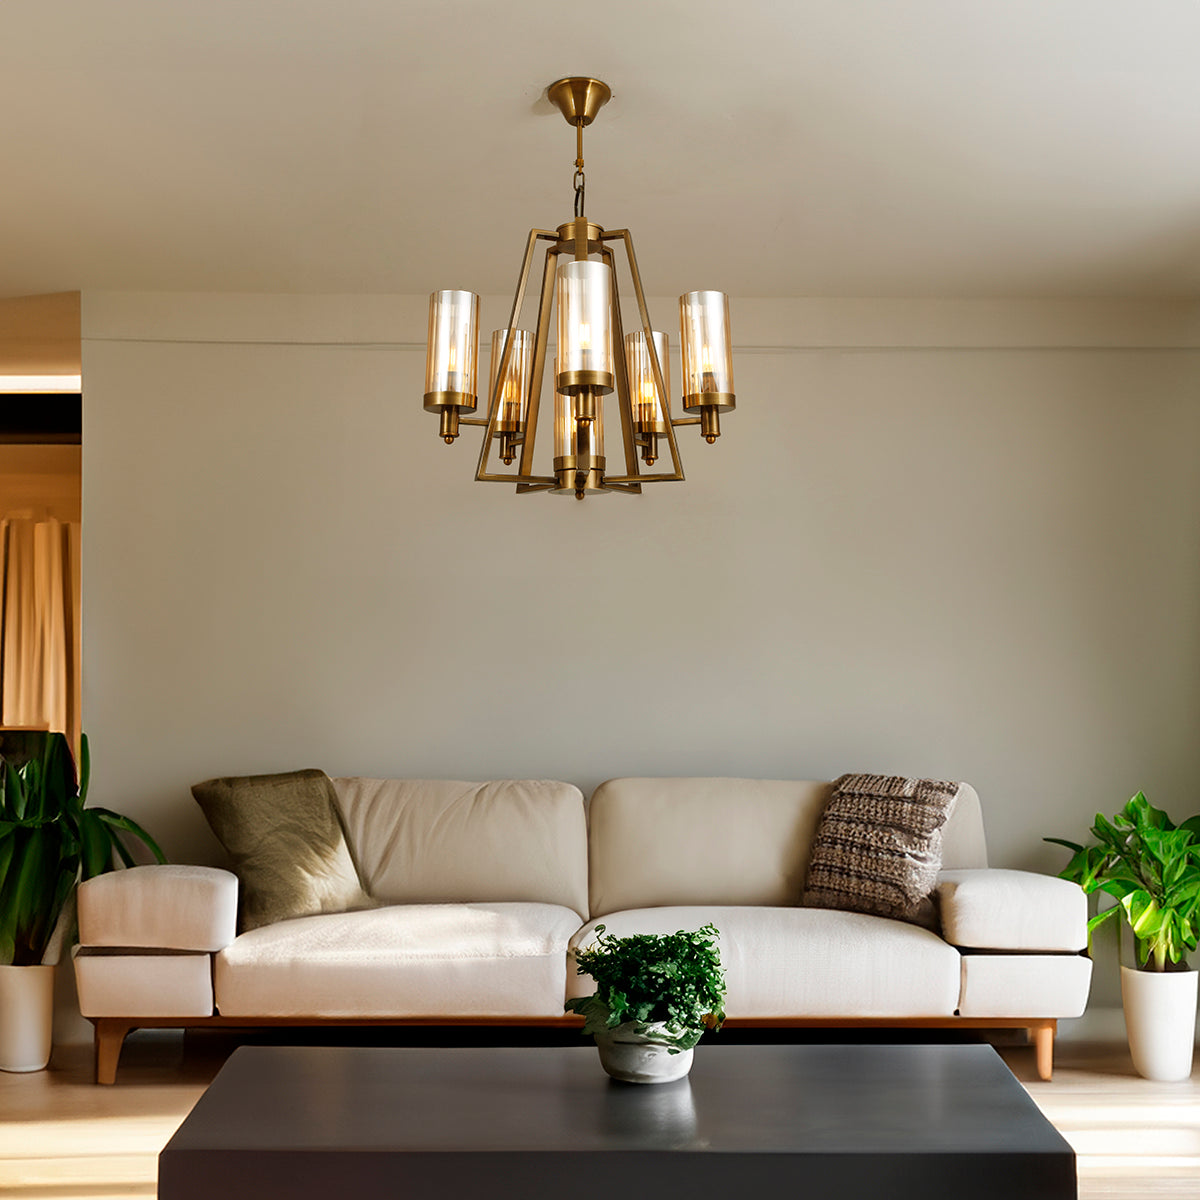 Buy Timeless Aura Chandelier Living Room